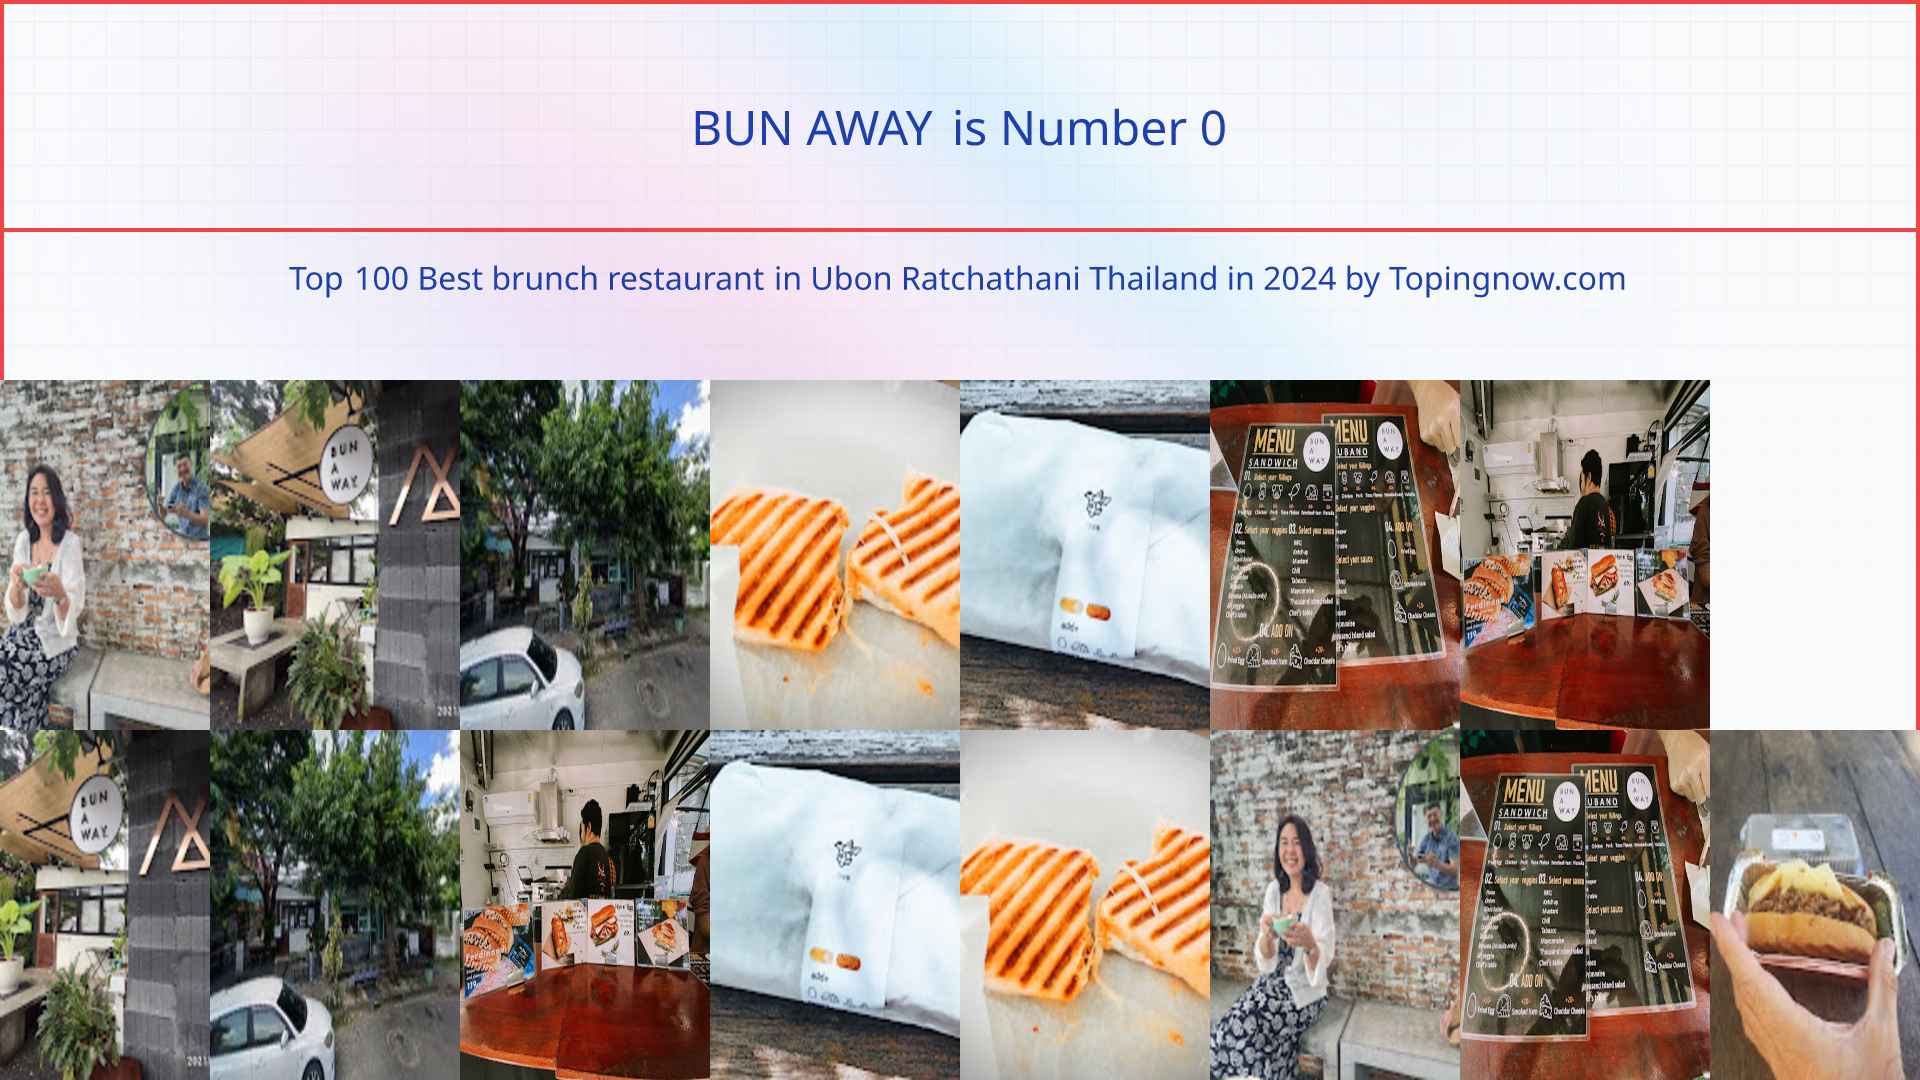 BUN AWAY: Top 100 Best brunch restaurant in Ubon Ratchathani Thailand in 2024